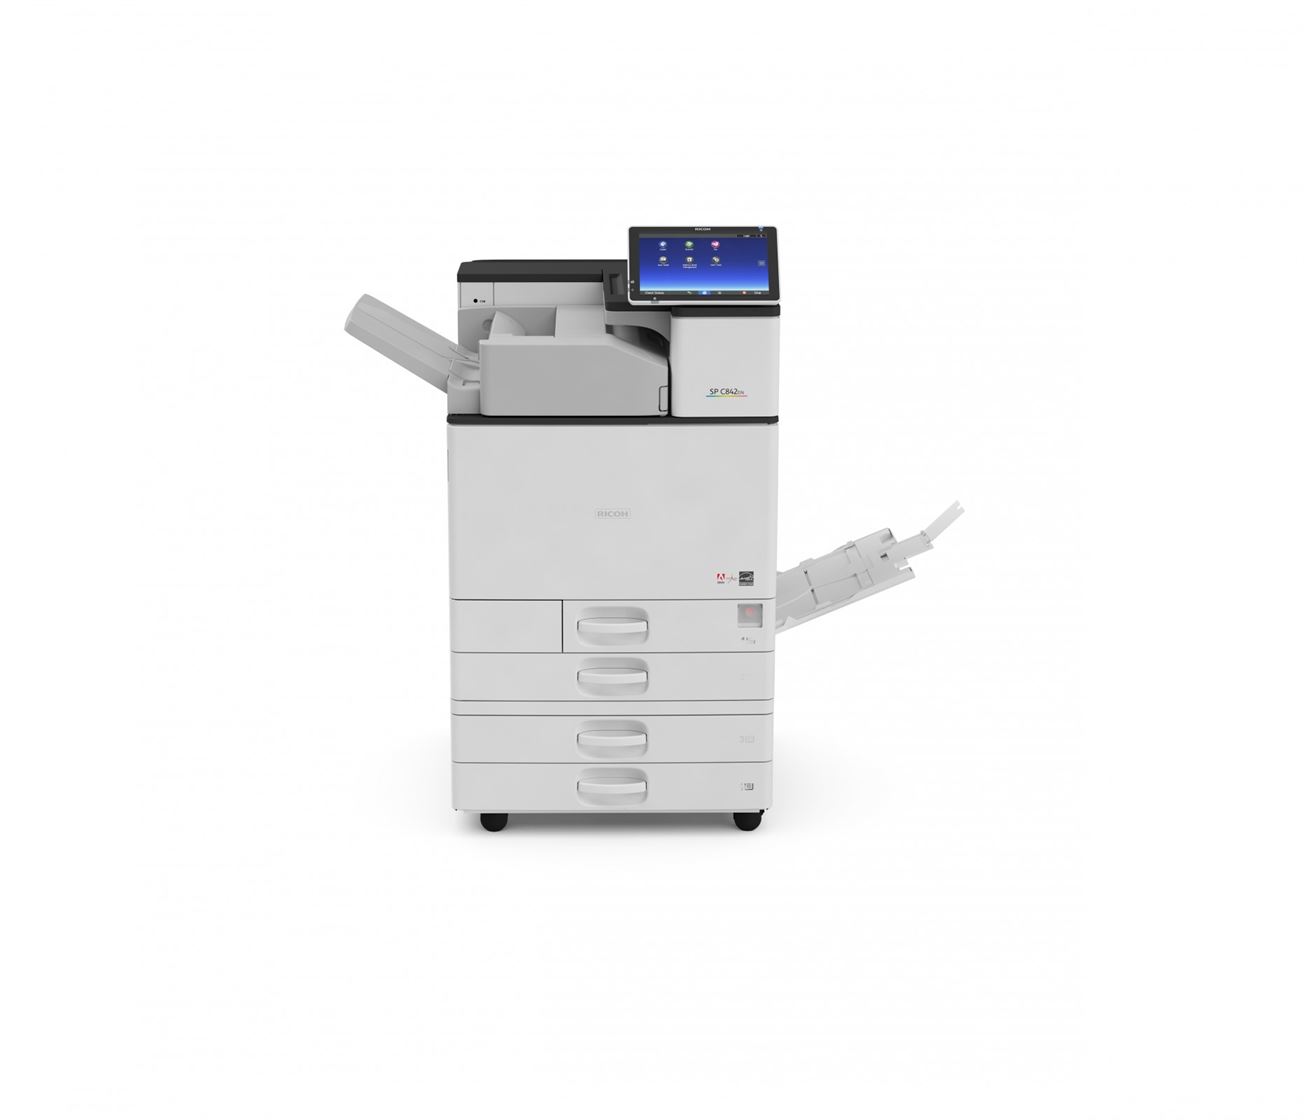 Impresora multifuncional láser color A3 archivos - Sercopi Levante